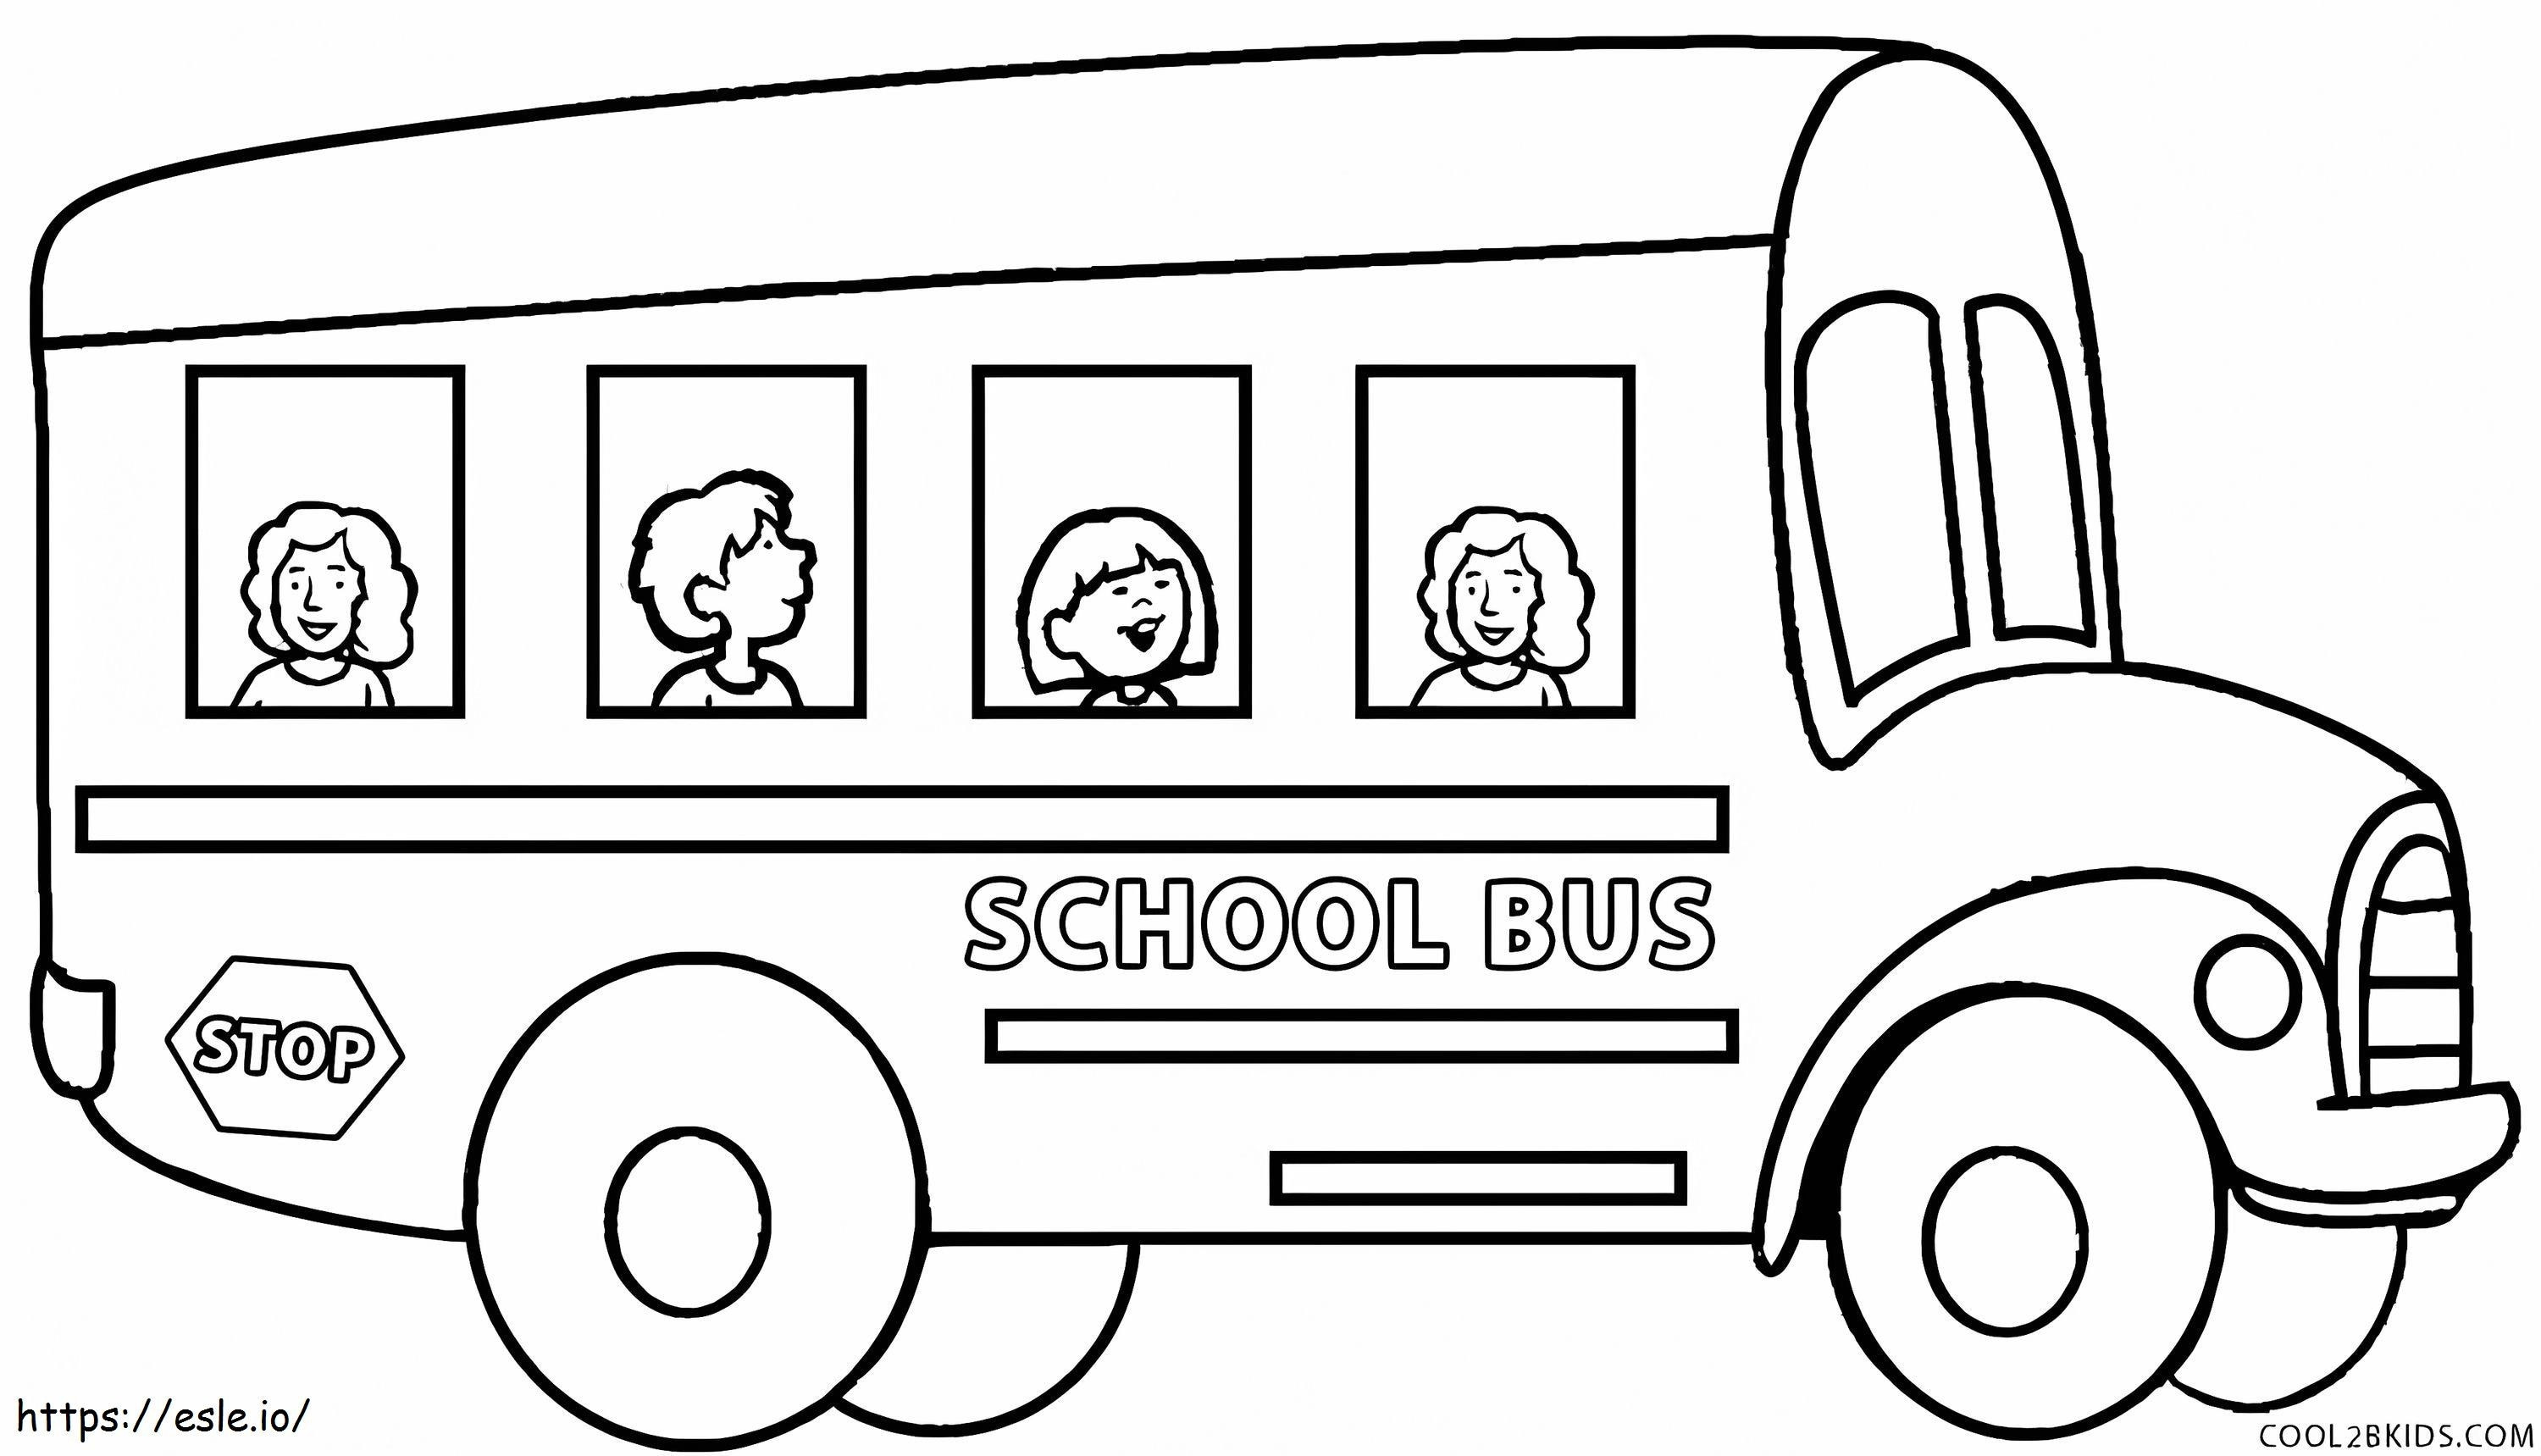 Czwórka dzieci w autobusie szkolnym kolorowanka